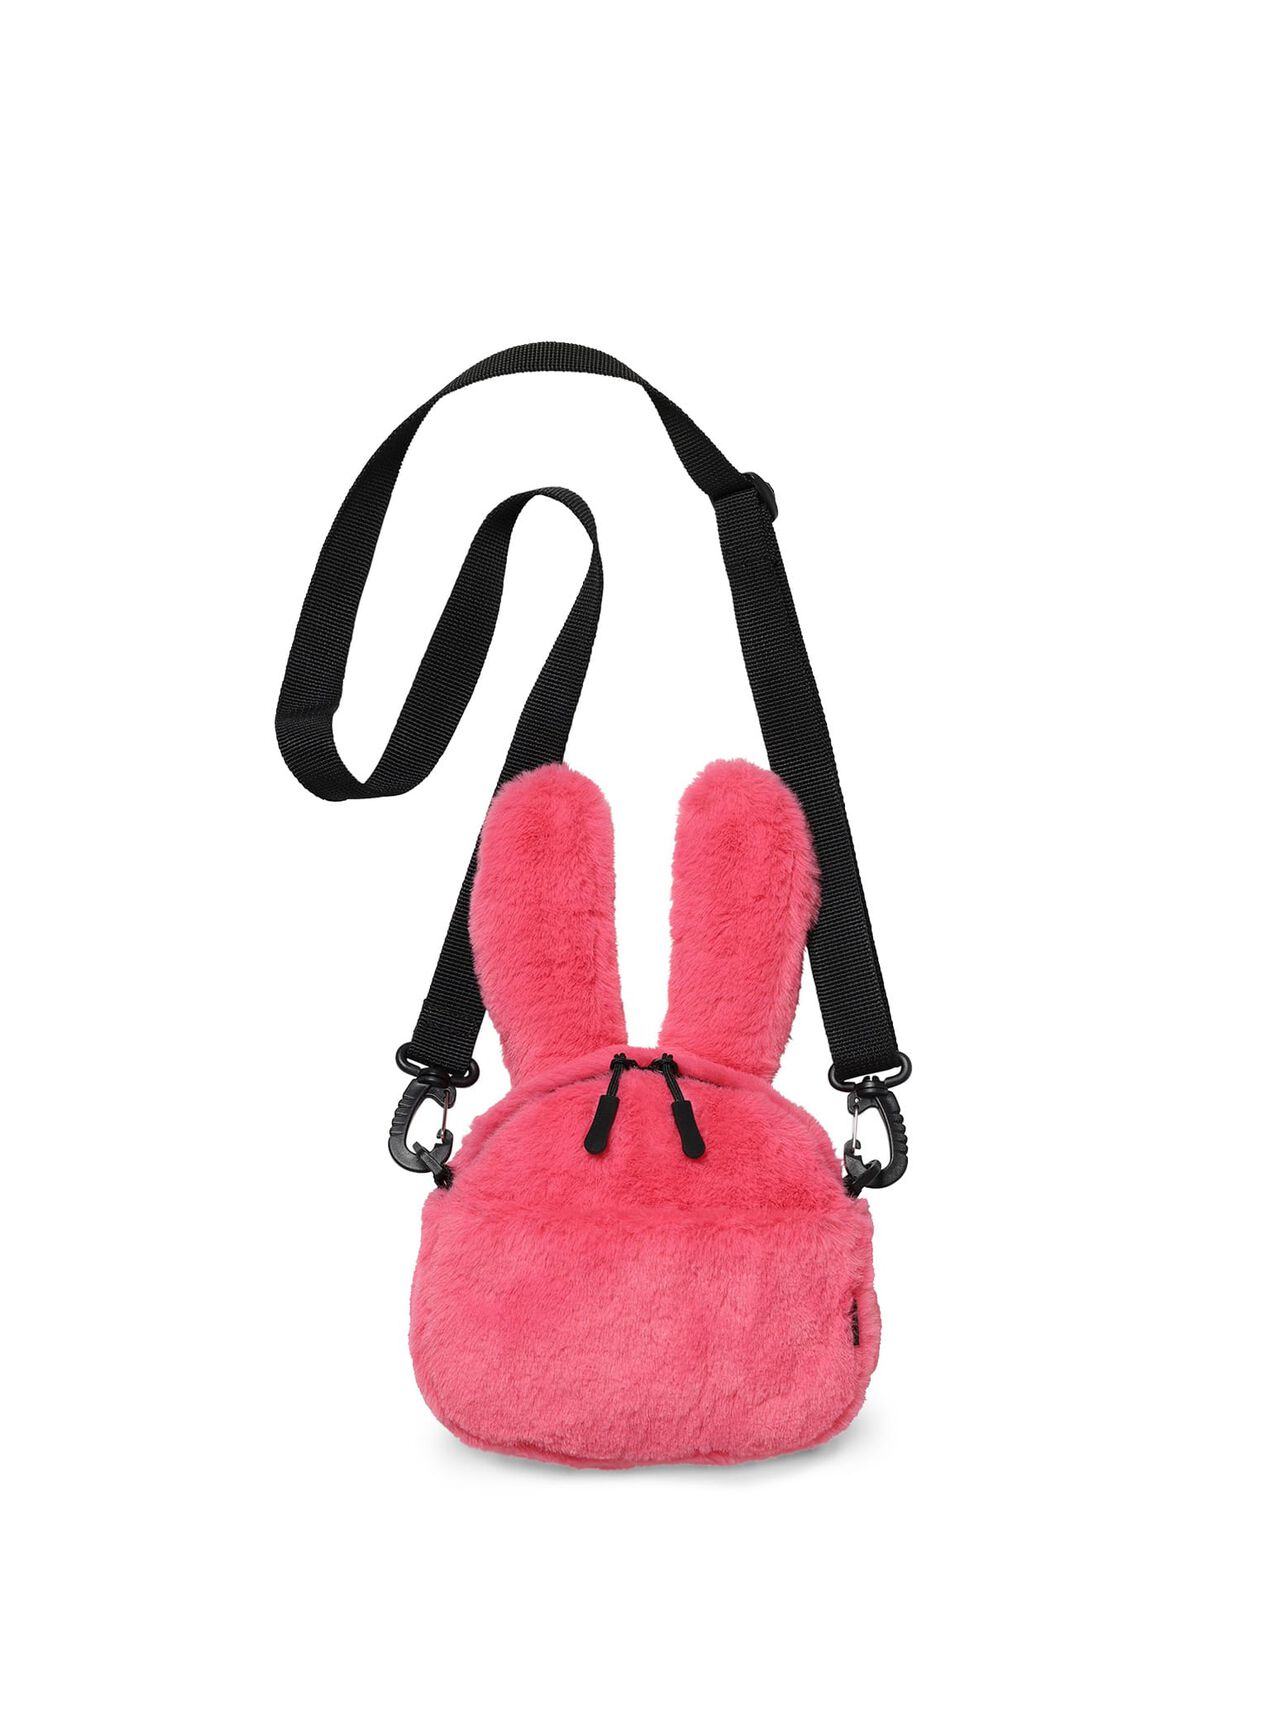 Fluffy Rabbit Shoulder Bag Small,ONE, large image number 1